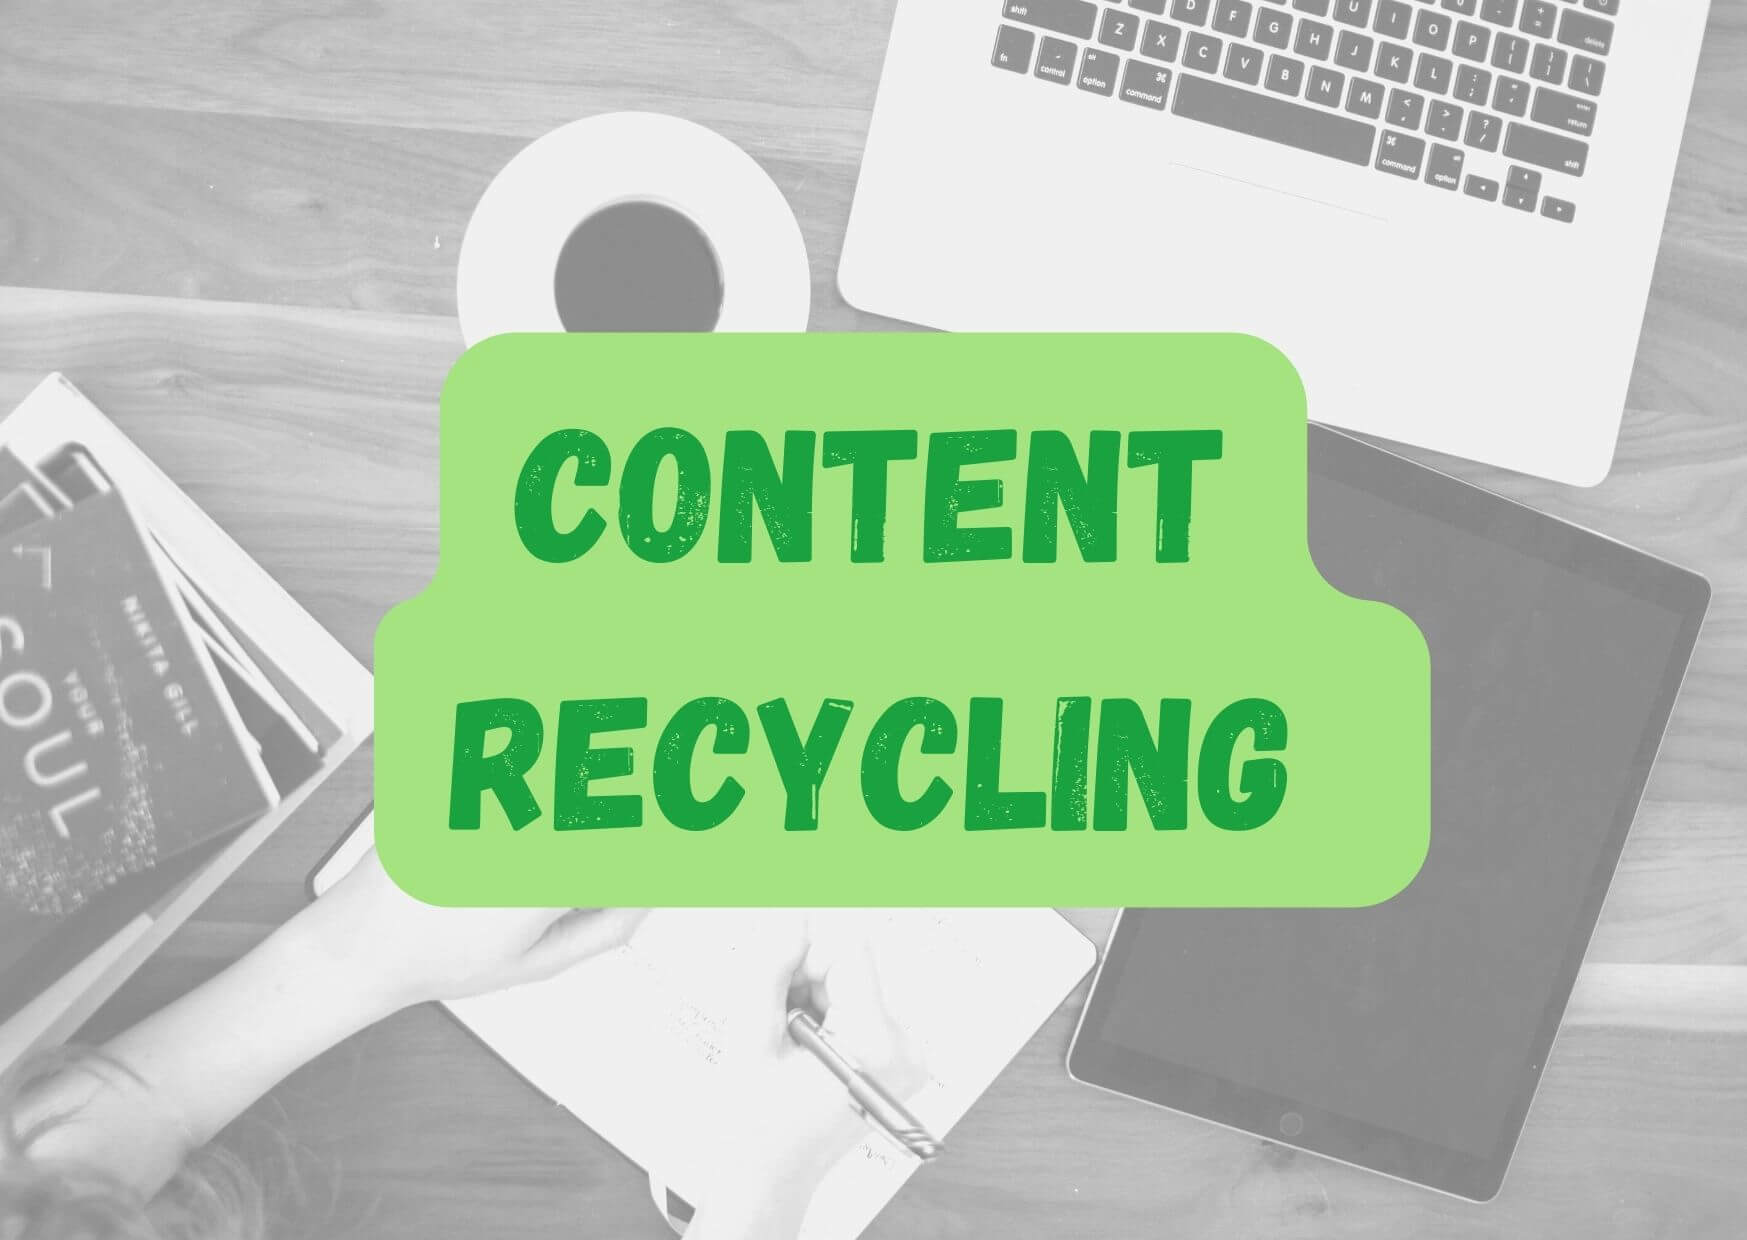 Du betrachtest gerade Content Recycling – so kannst du es für dein Online-Marketing nutzen